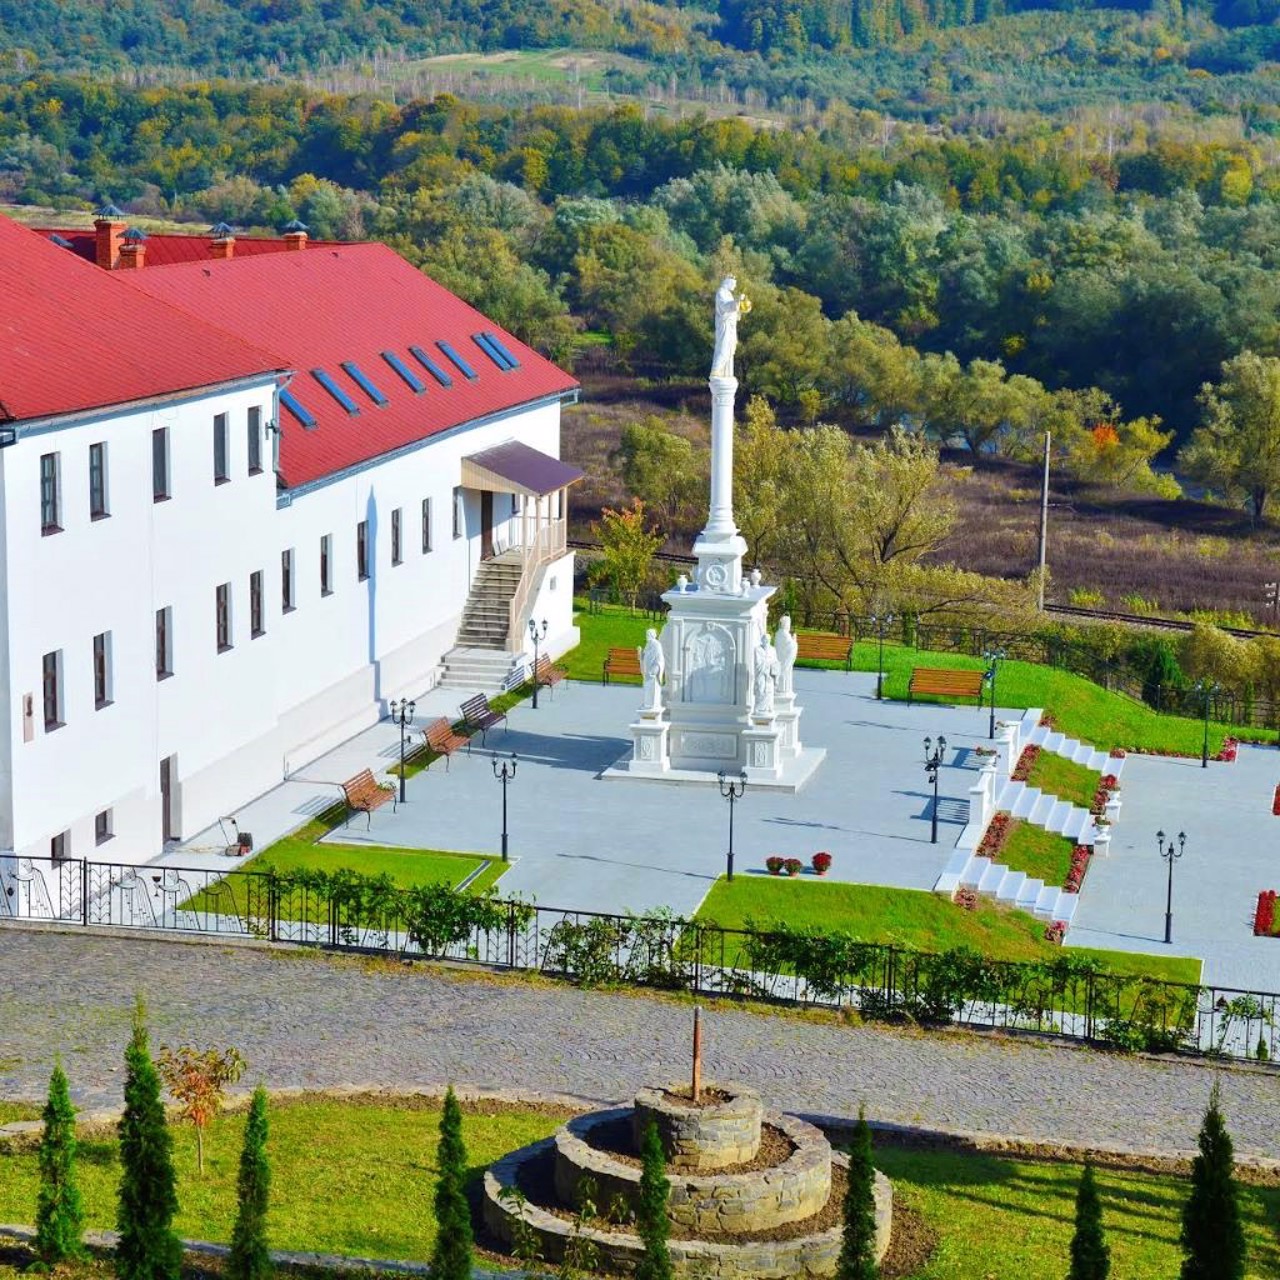 Malyi Bereznyi village